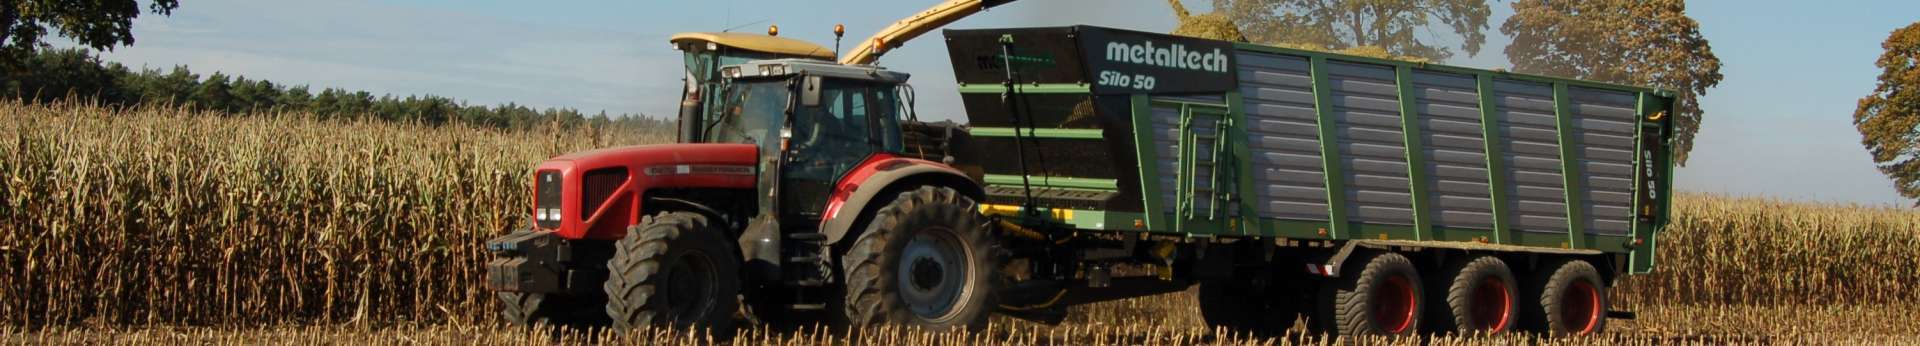 Ciąnik rolniczy Massey Ferguson 6270 z przyczepą Metaltech Mirosławiec Silo pracujący w polu przy kukurydzy 